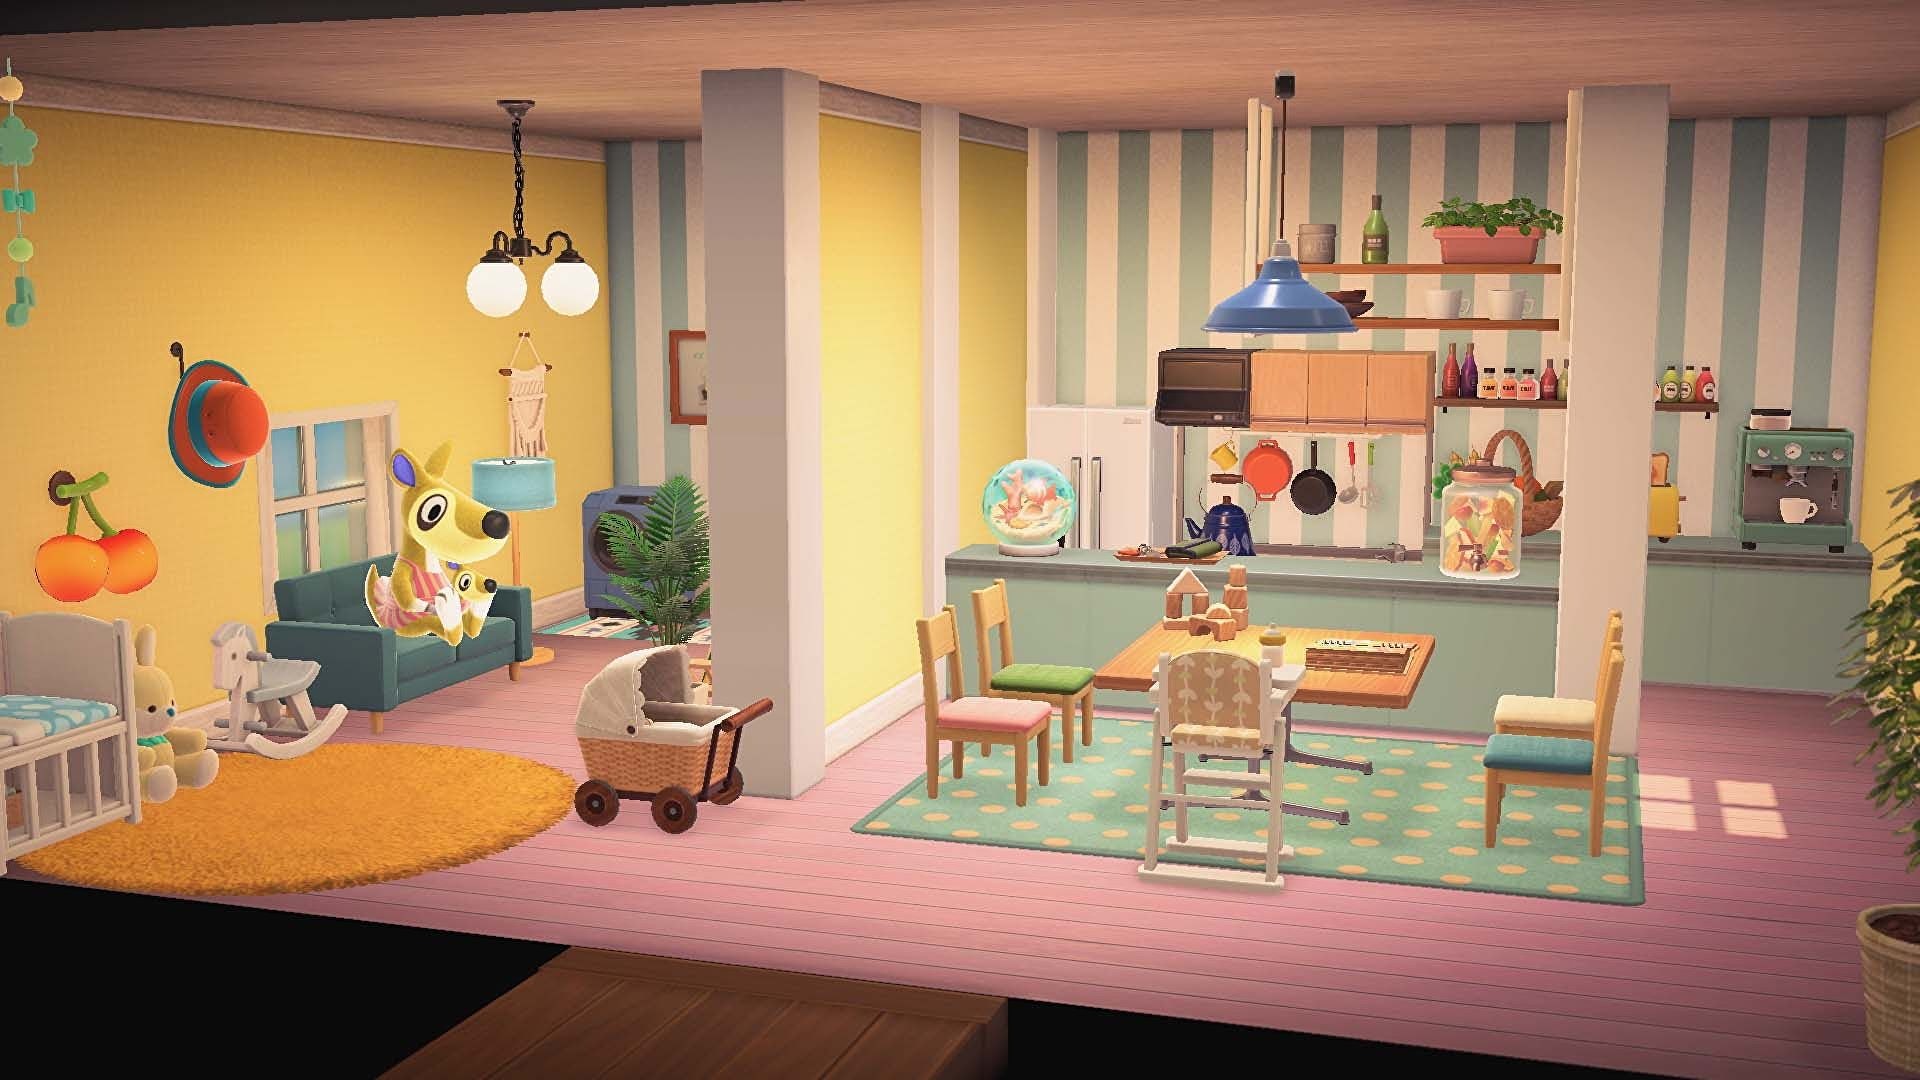 U kunt nu uw droomvakantiehuis ontwerpen op Animal Crossing